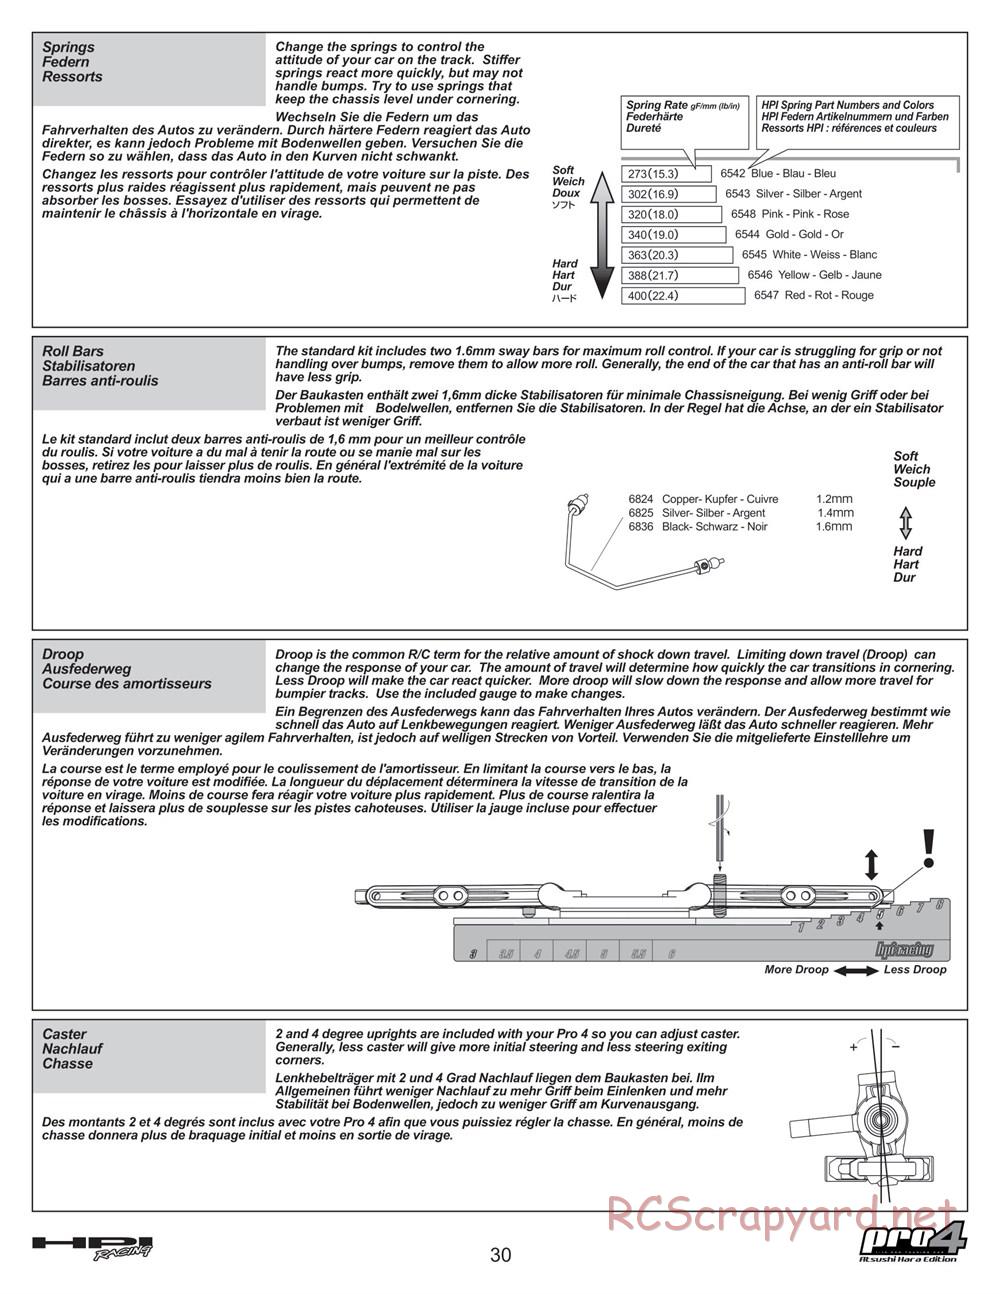 HPI - Pro4 Hara Edition - Manual - Page 30